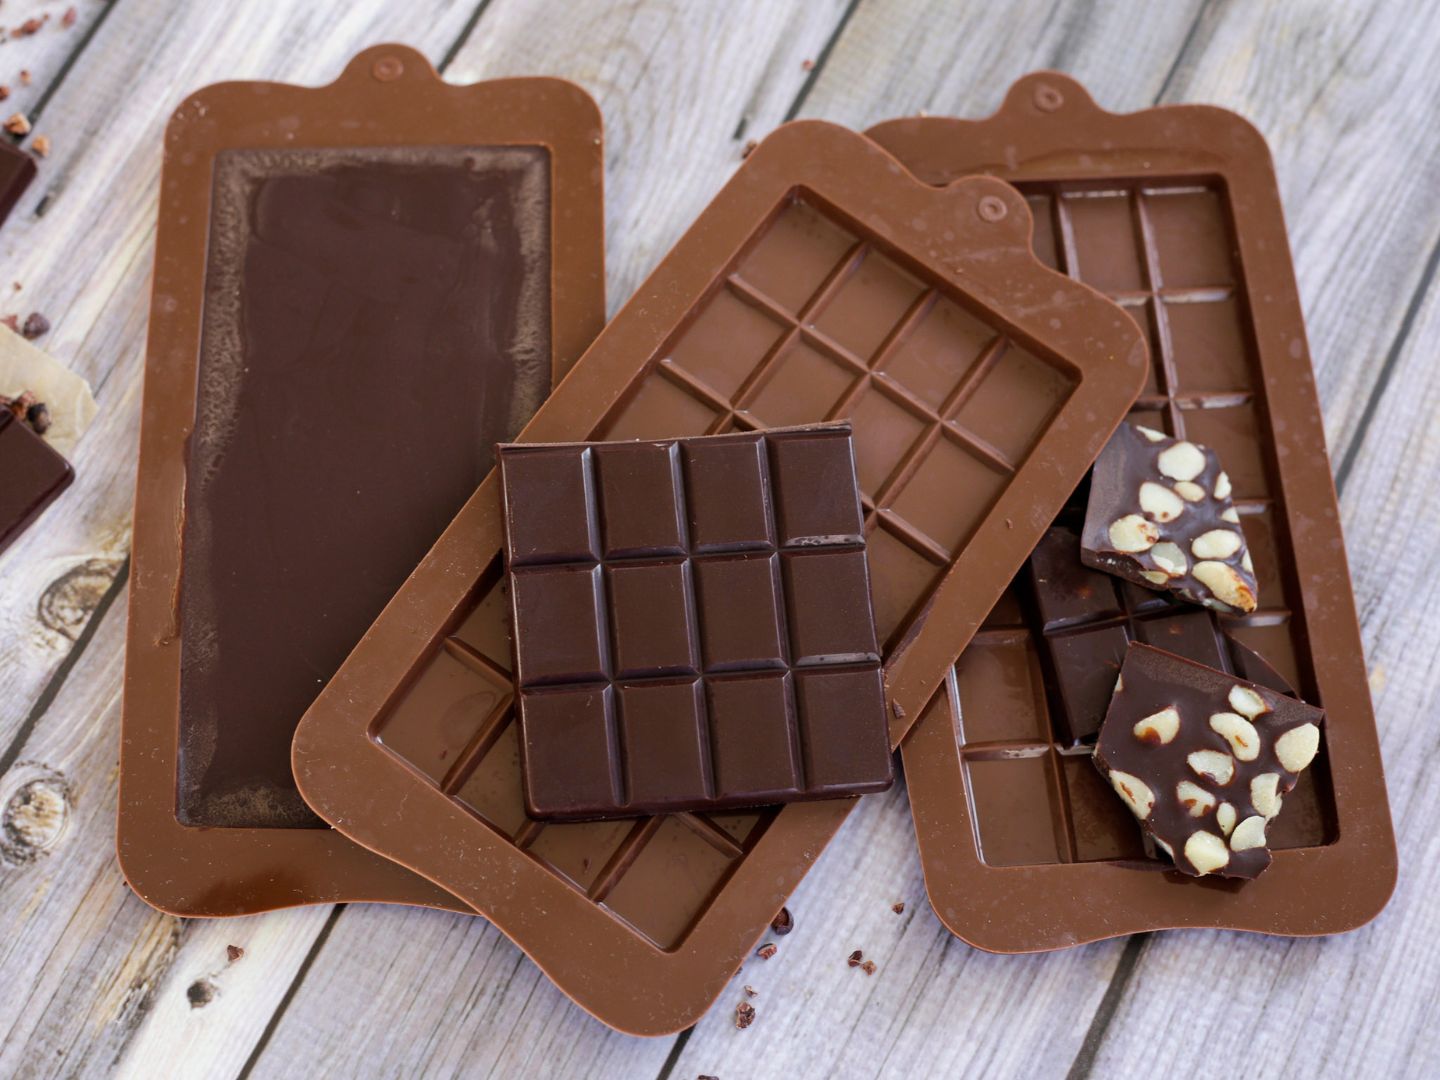 Vegane Schokolade Selber Machen Schokolade in Silikonformen